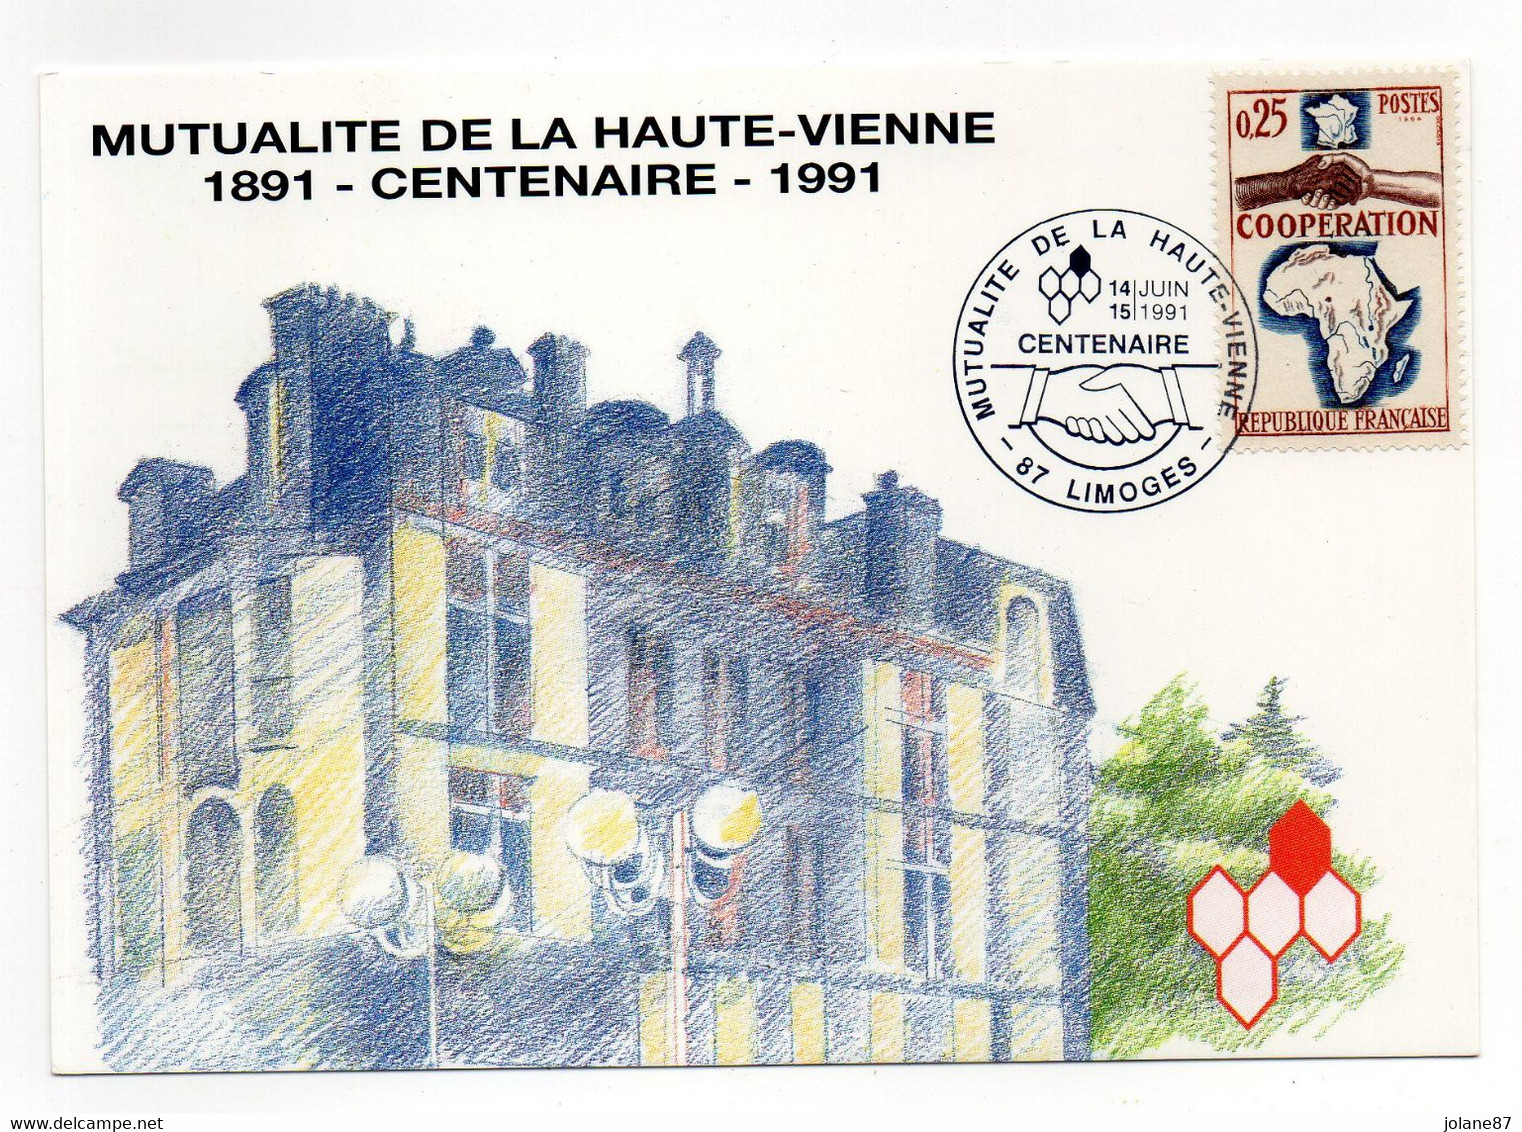 CPM    87    LIMOGES  -   MUTUALITE HAUTE VIENNE     -   1891 CENTENAIRE 1991    AVEC TIMBRE COOPERATION - Bourses & Salons De Collections